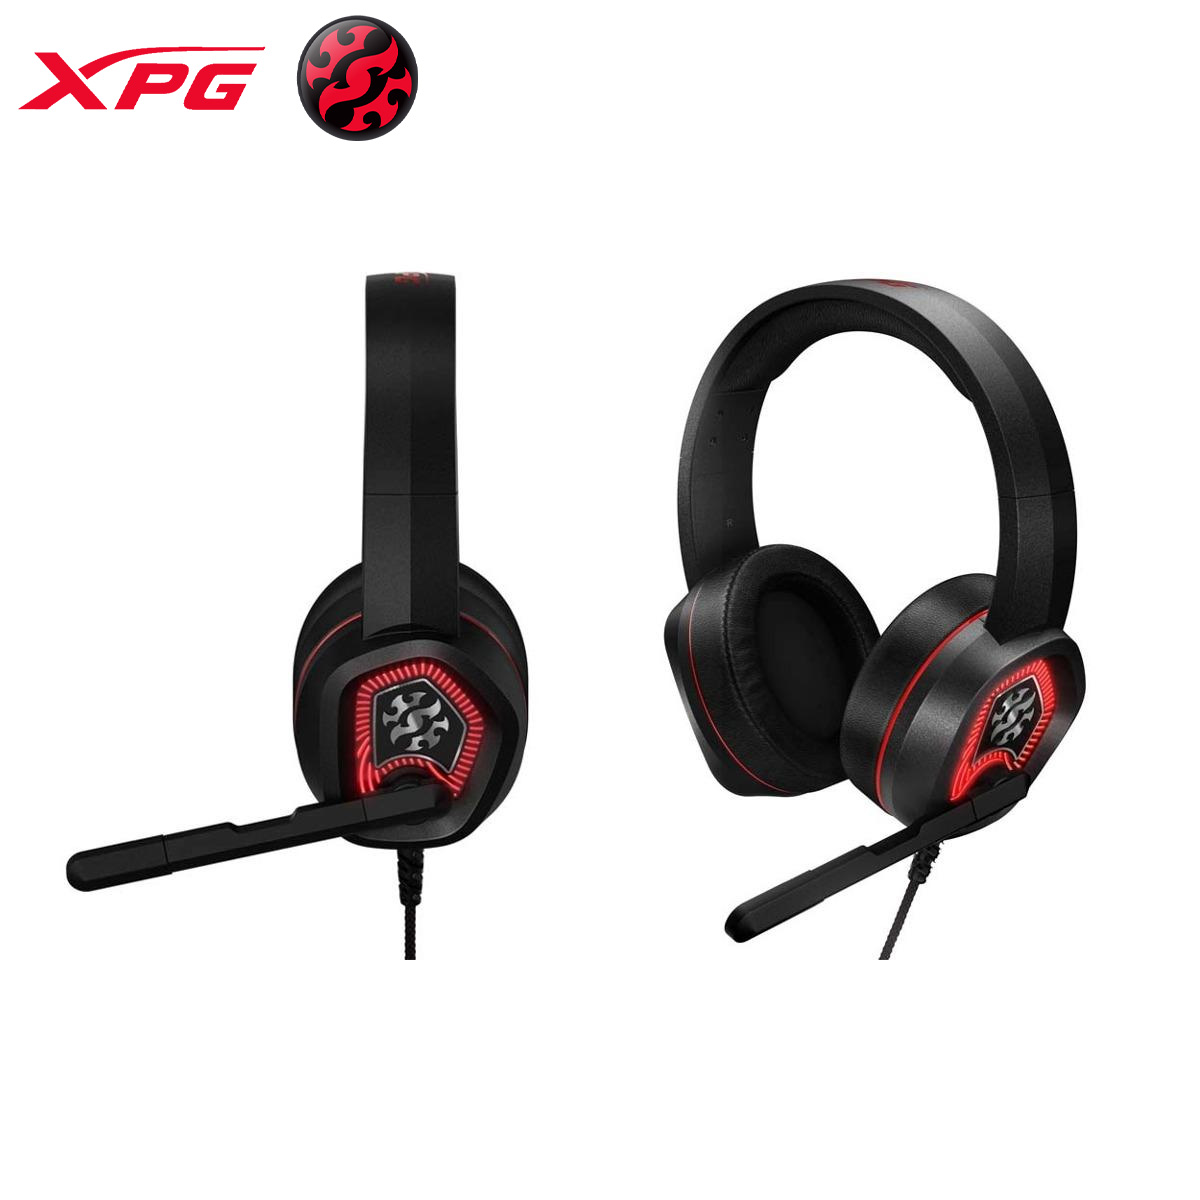 XPG EMIX H20 Gaming Headset